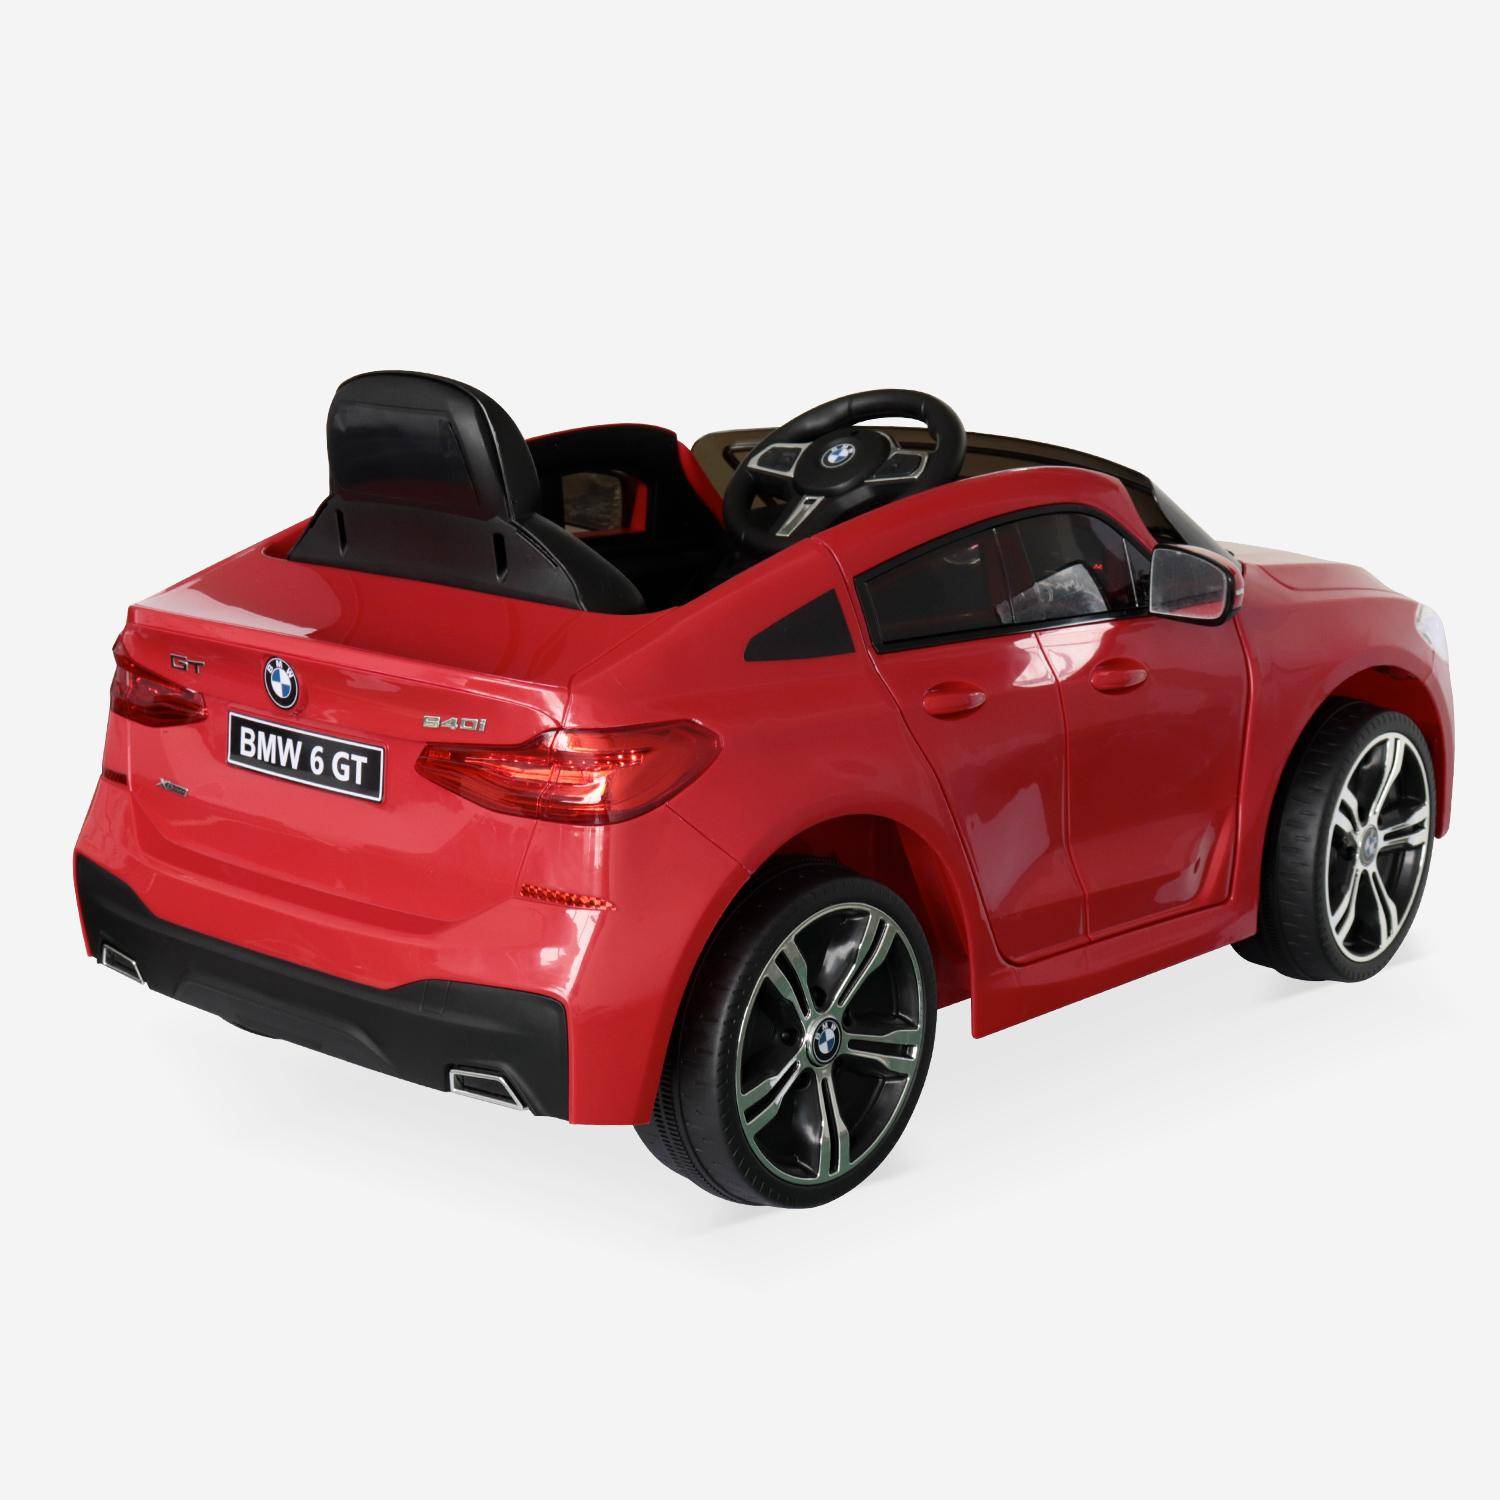 BMW Serie 6GT Gran Turismo rossa, macchina elettrica per bambini 12V 4 Ah, 1 posto, con autoradio e telecomando,sweeek,Photo3